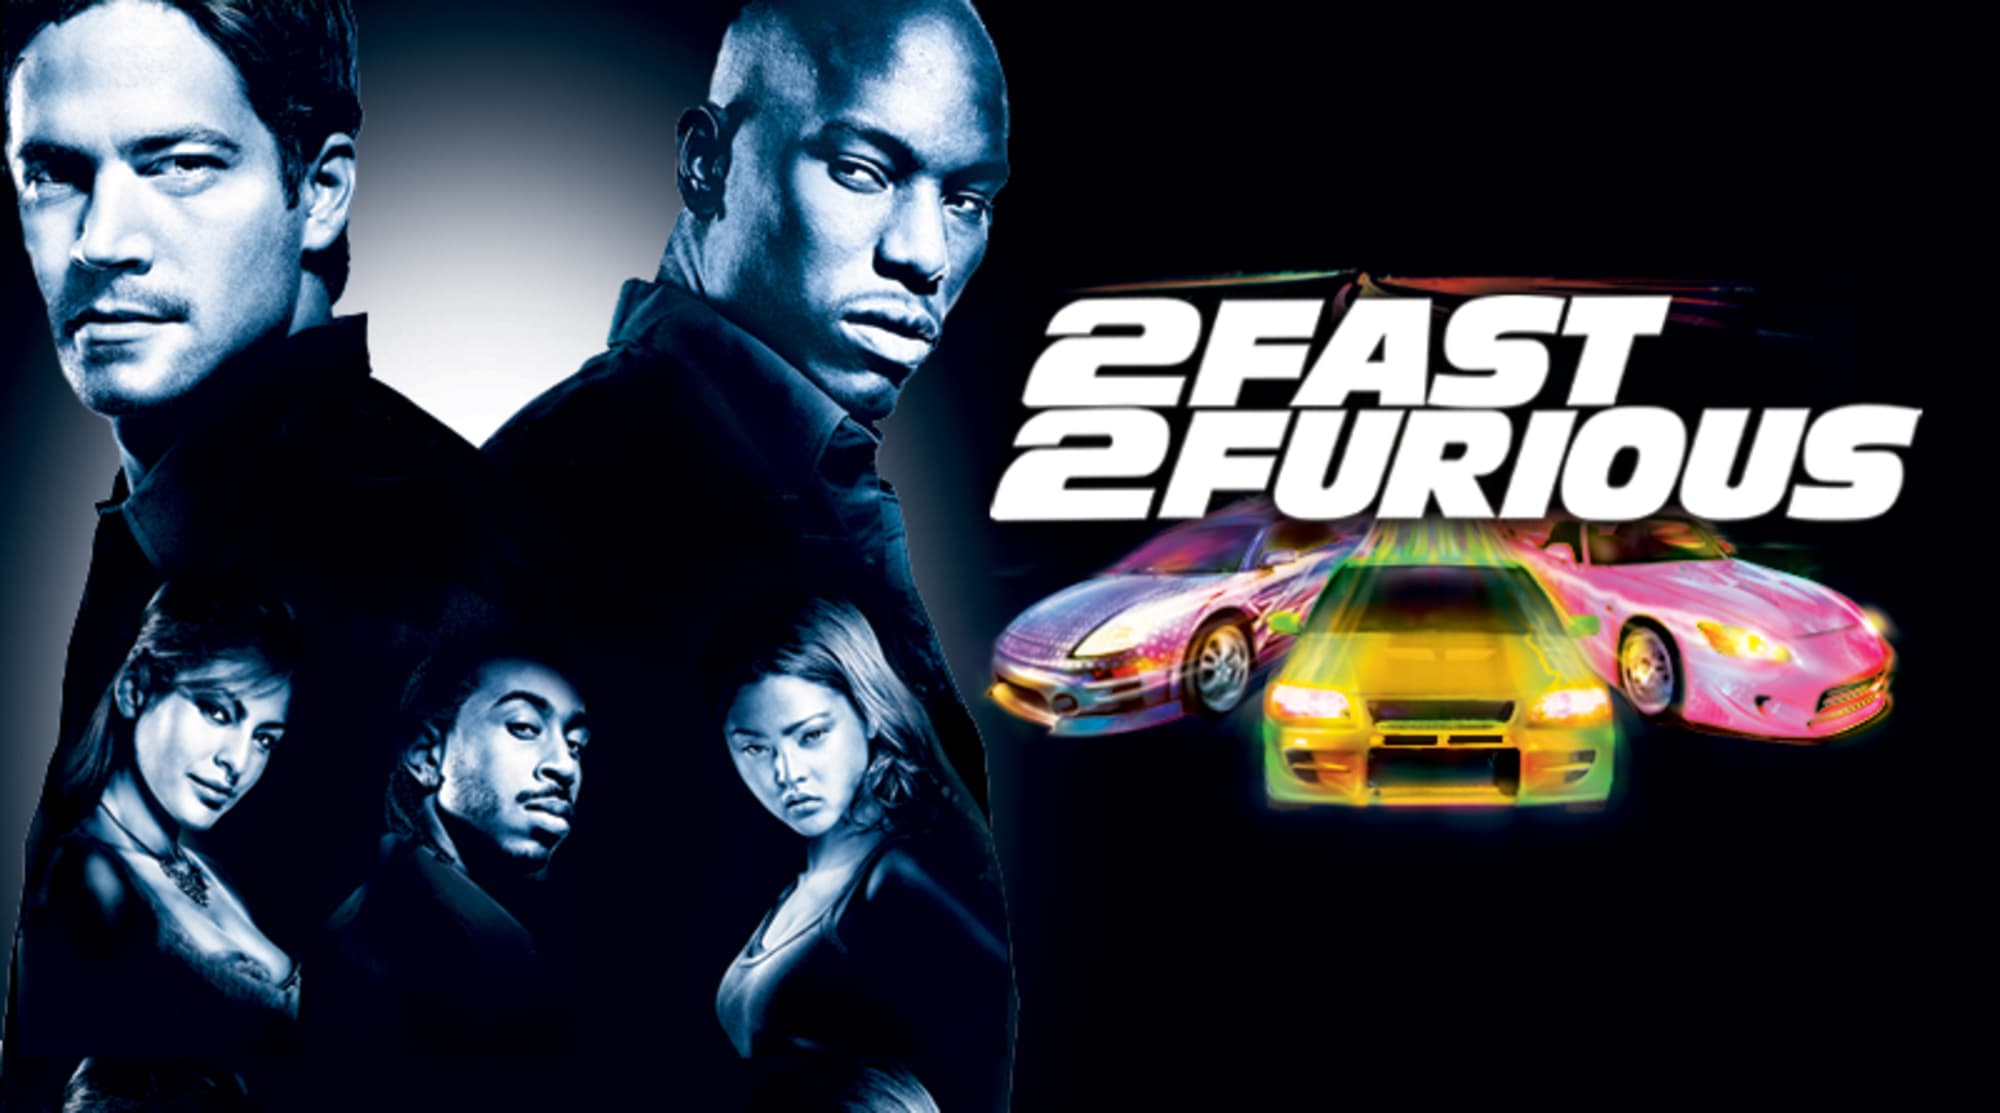 Форсаж на английском языке. 2 Fast 2 Furious. Двойной Форсаж 2003 обложка. Двойной Форсаж Постер.